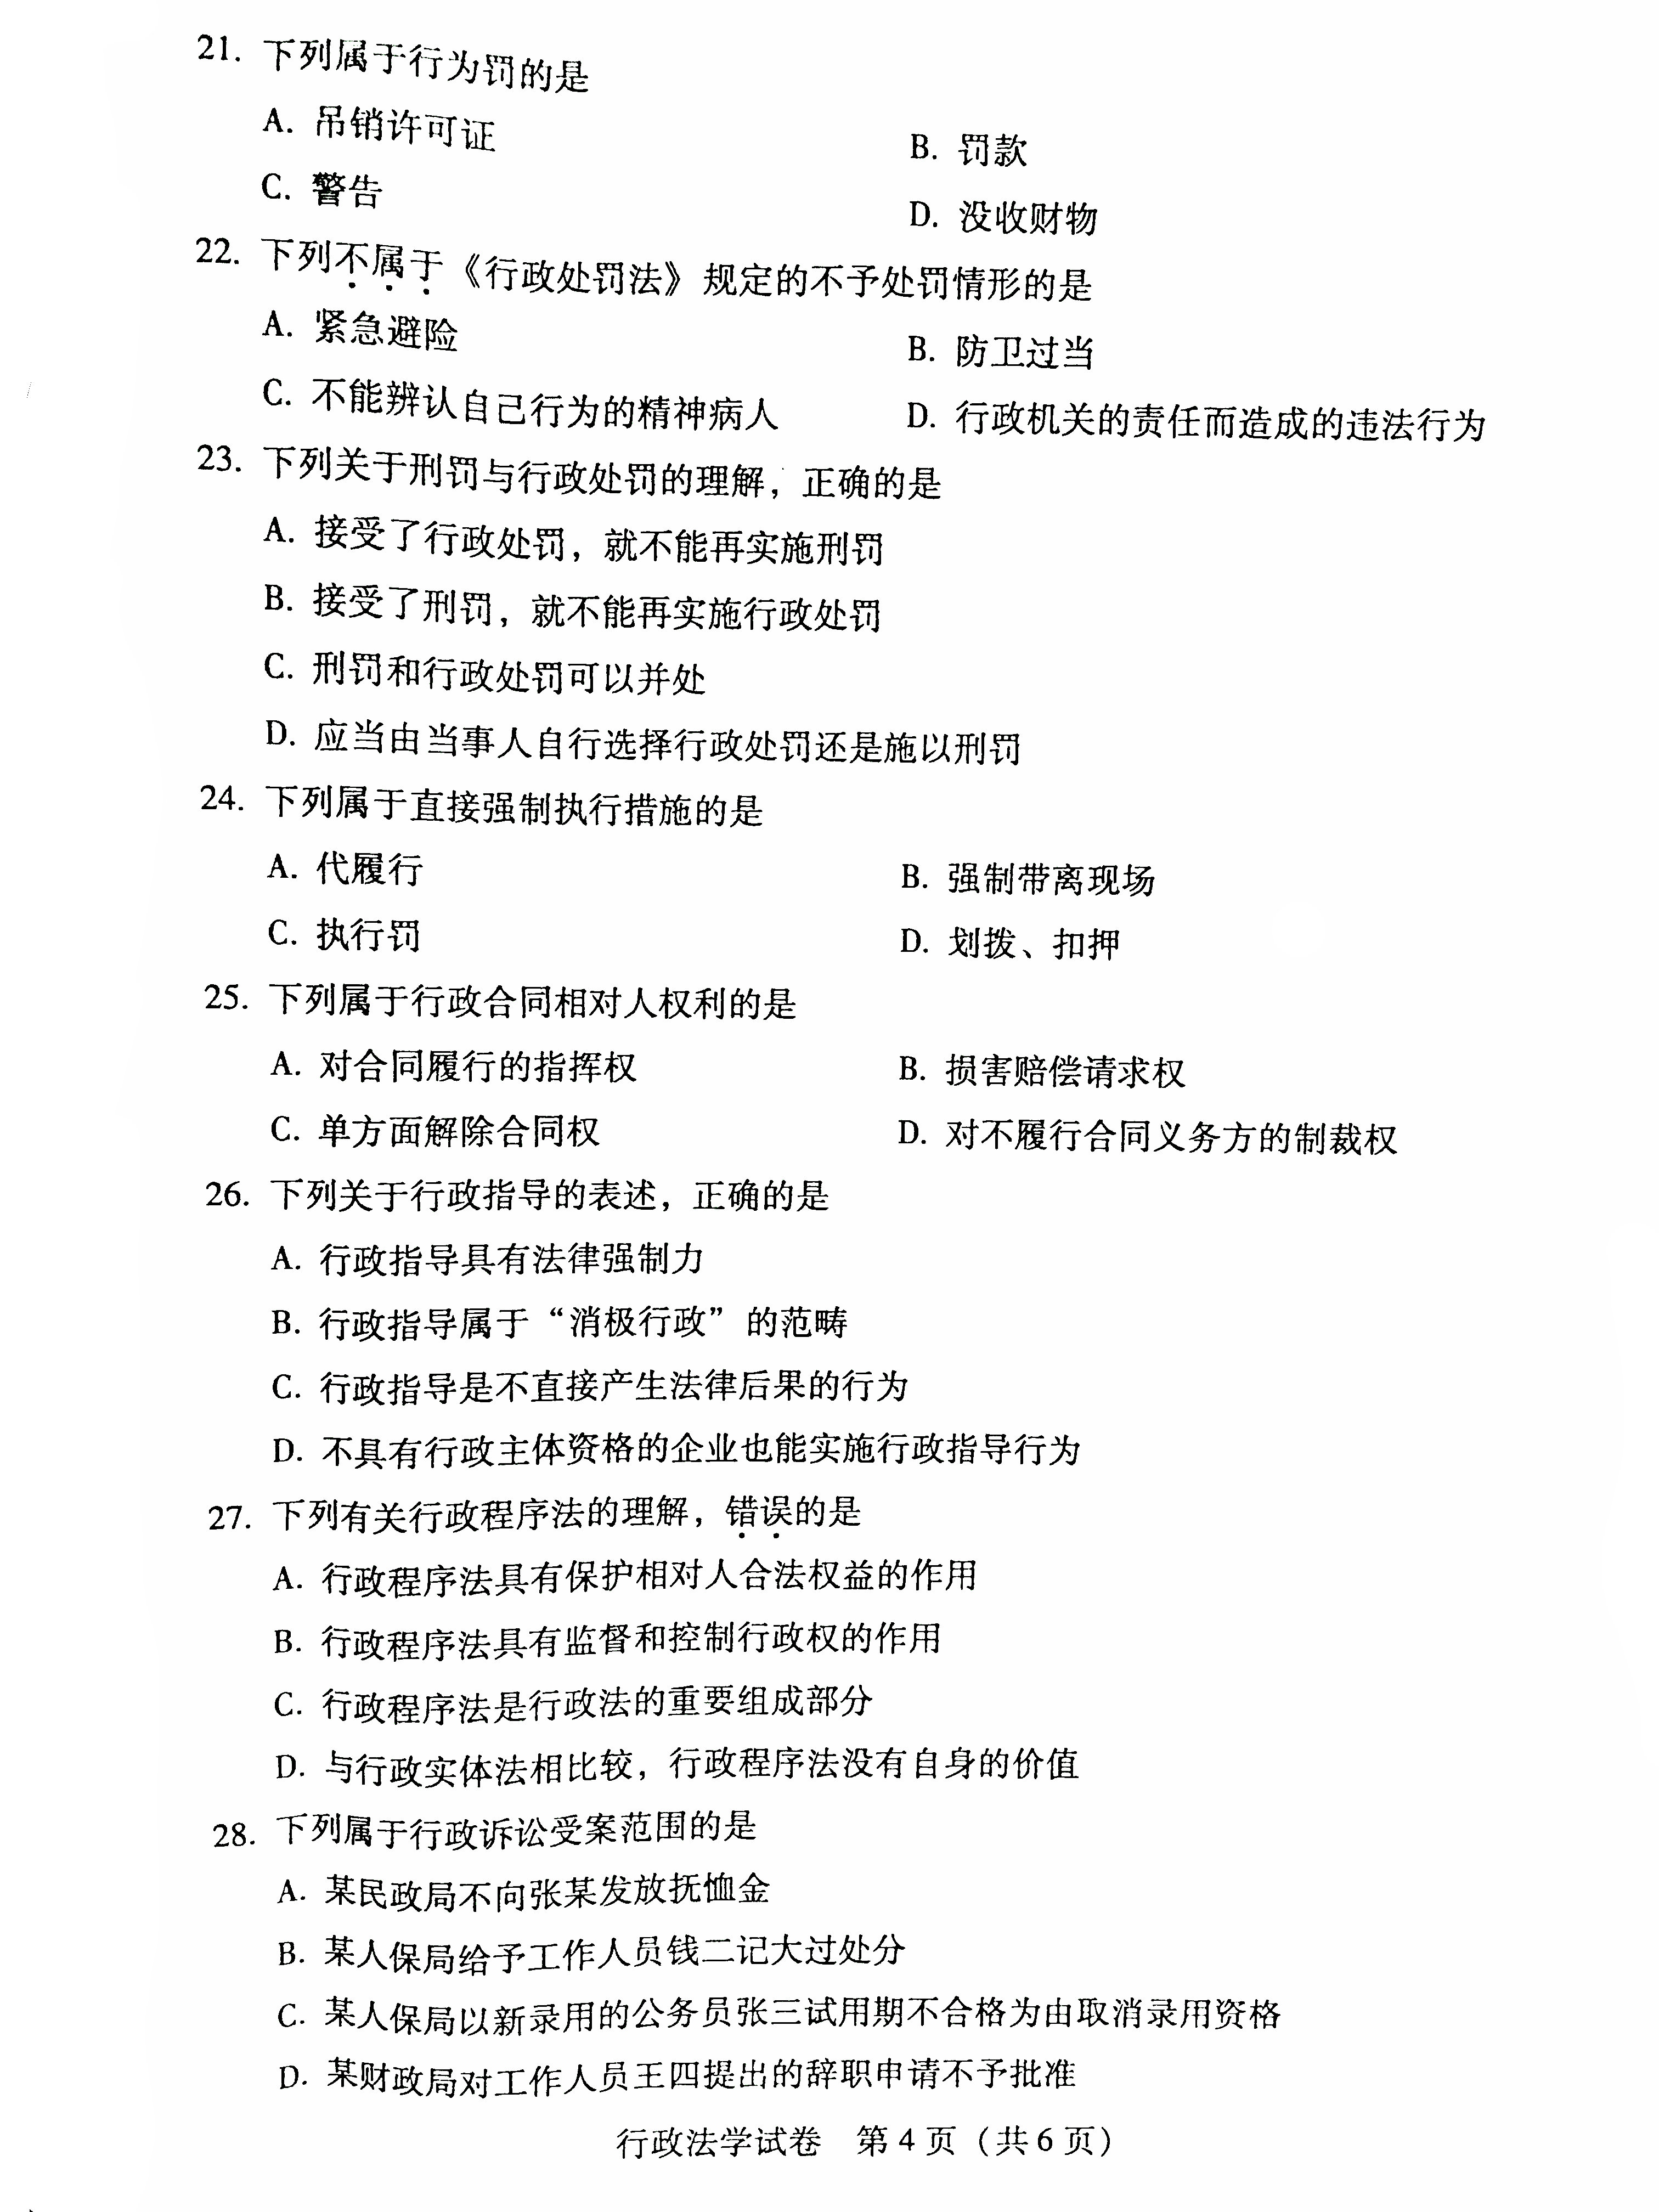 贵州省2016年04月自学考试试题及答案